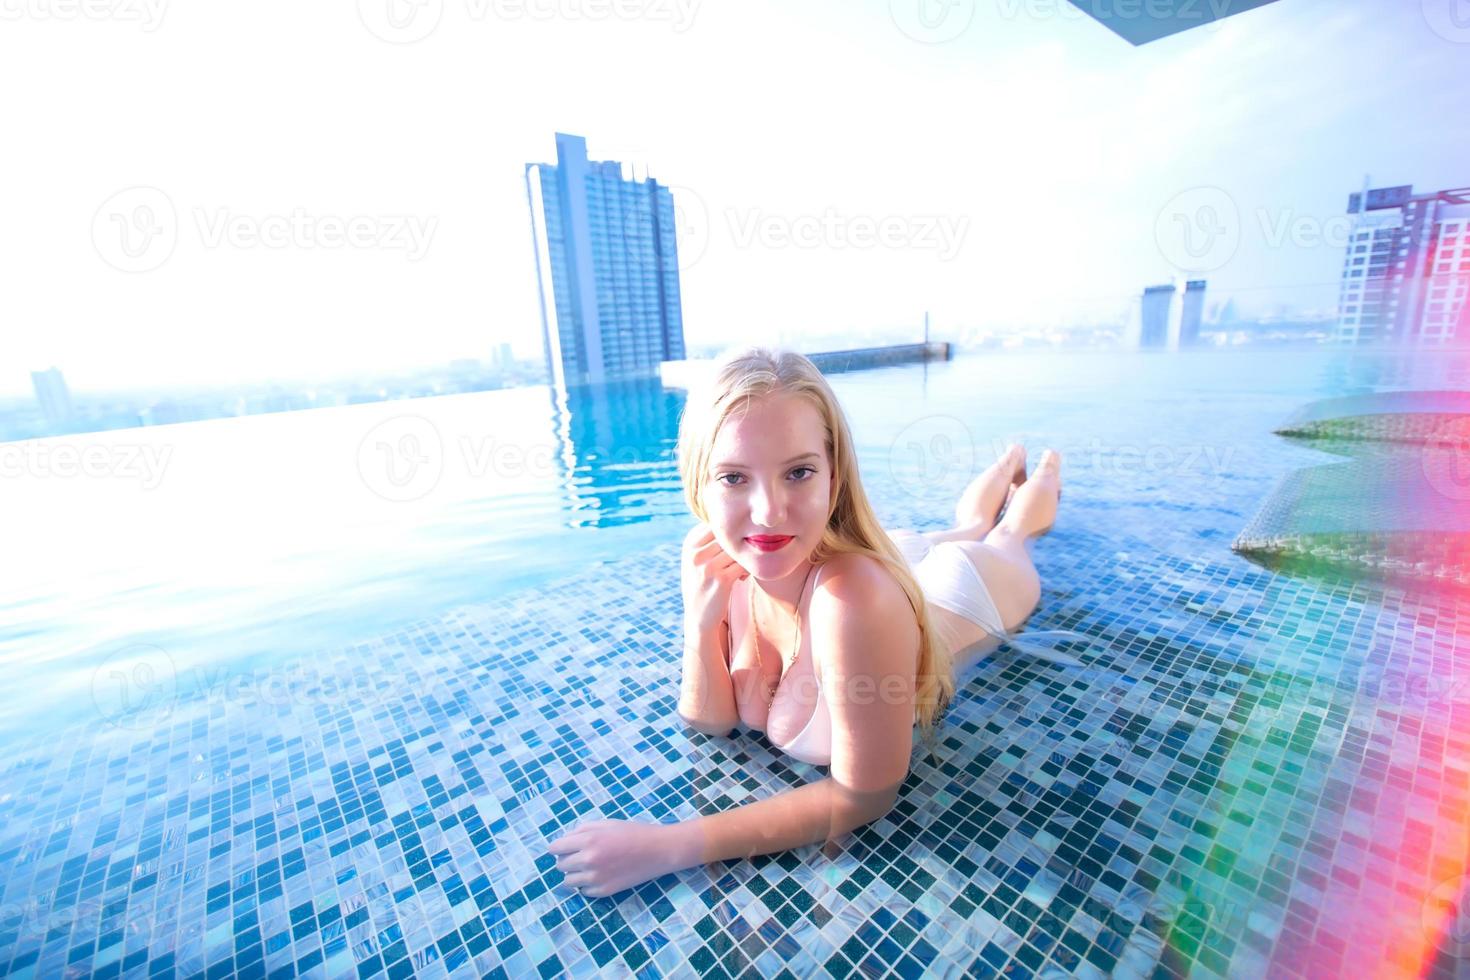 jovem desfrutando de um sol, modelo jovem magro em biquíni branco à beira da piscina. foto